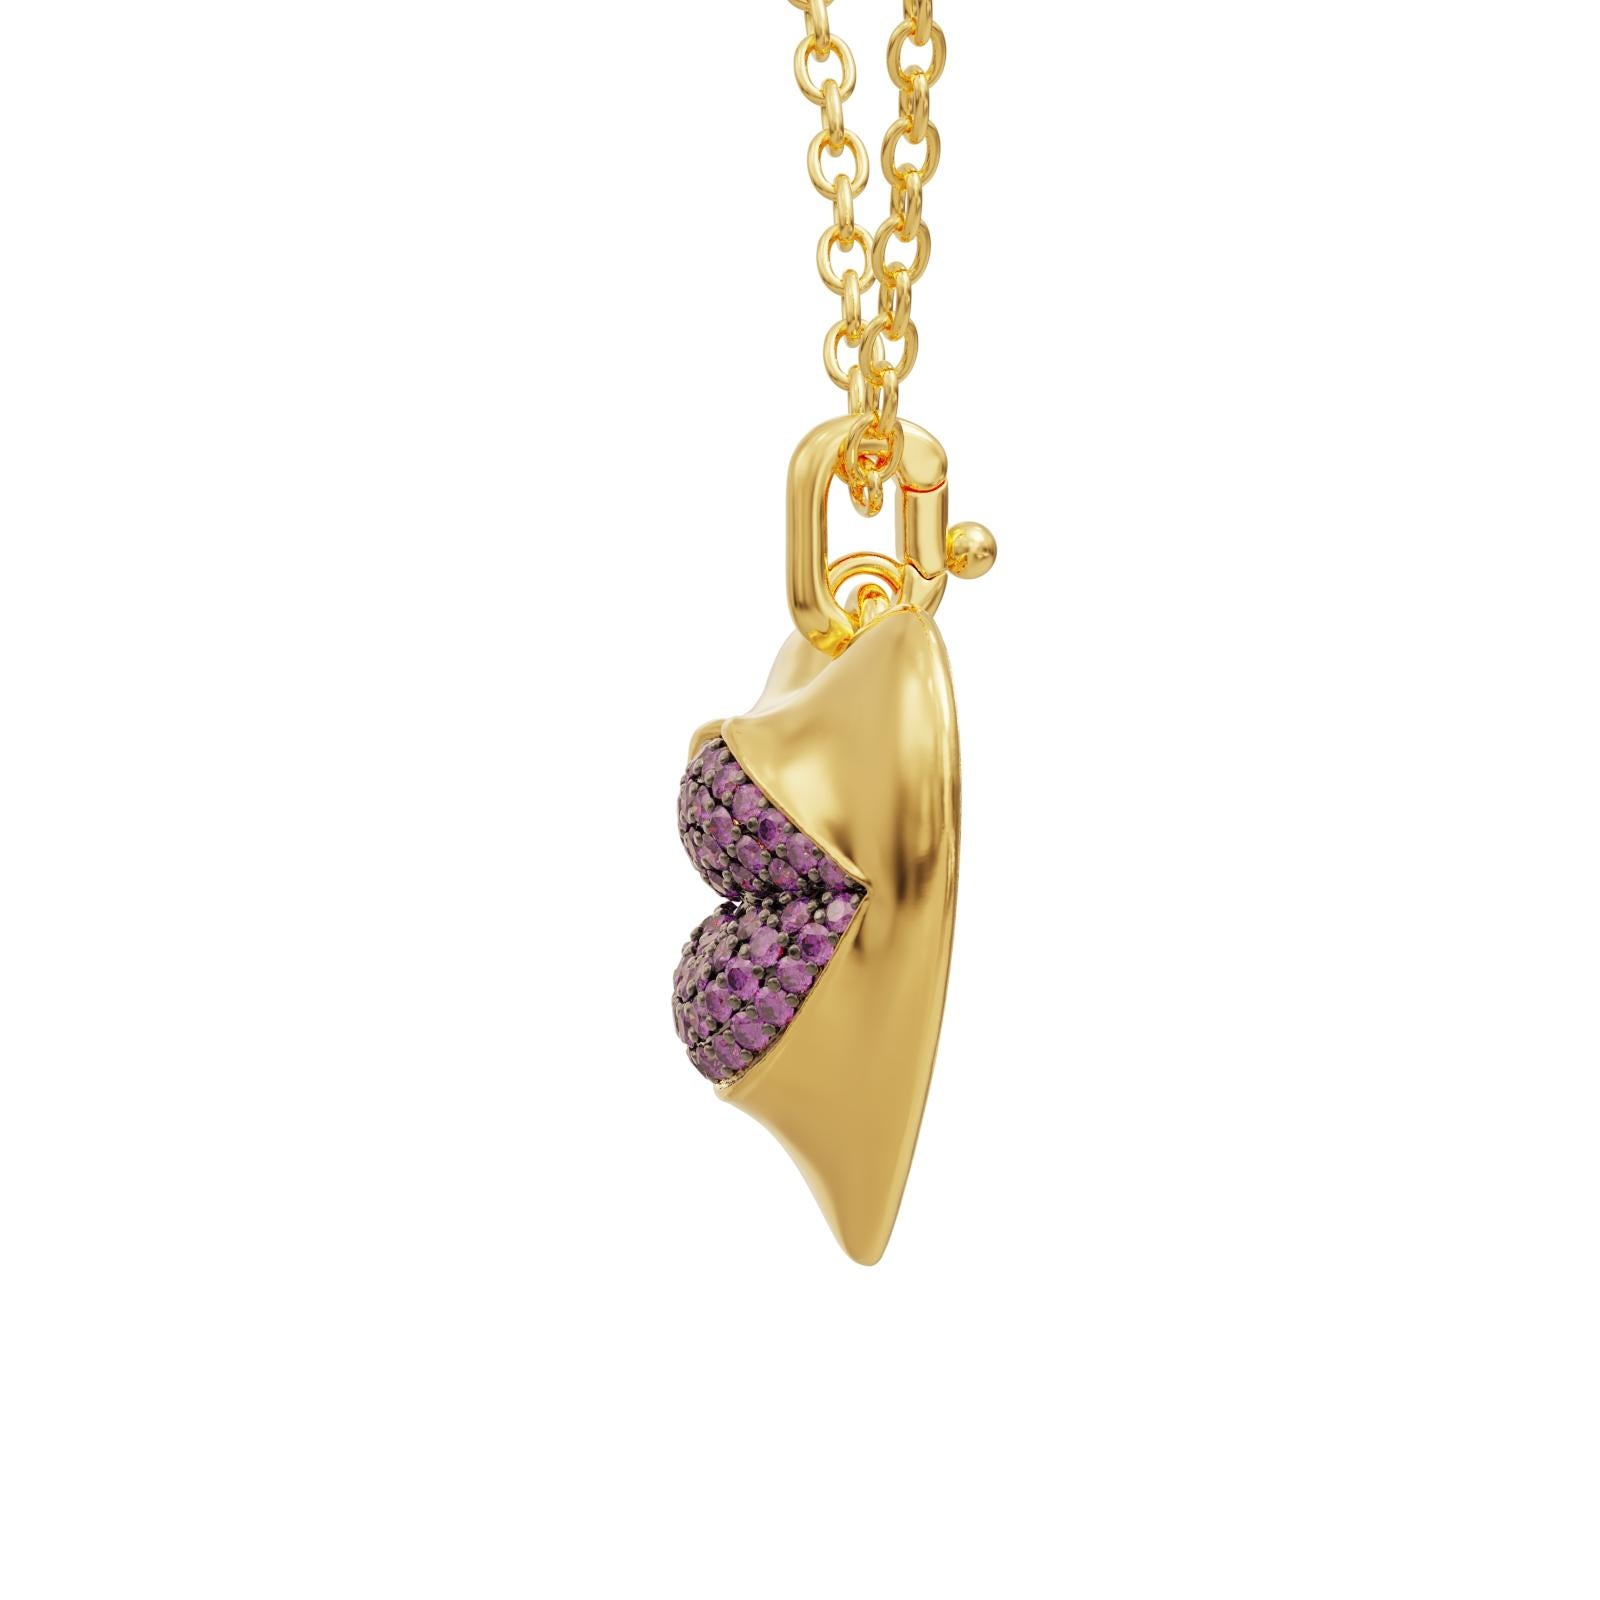 Voici notre superbe collier à pendentif en forme de cœur en vermeil, un must pour toute femme à la pointe de la mode qui cherche à ajouter une touche d'élégance et de sophistication à sa collection de bijoux. Fabriqué avec les matériaux les plus